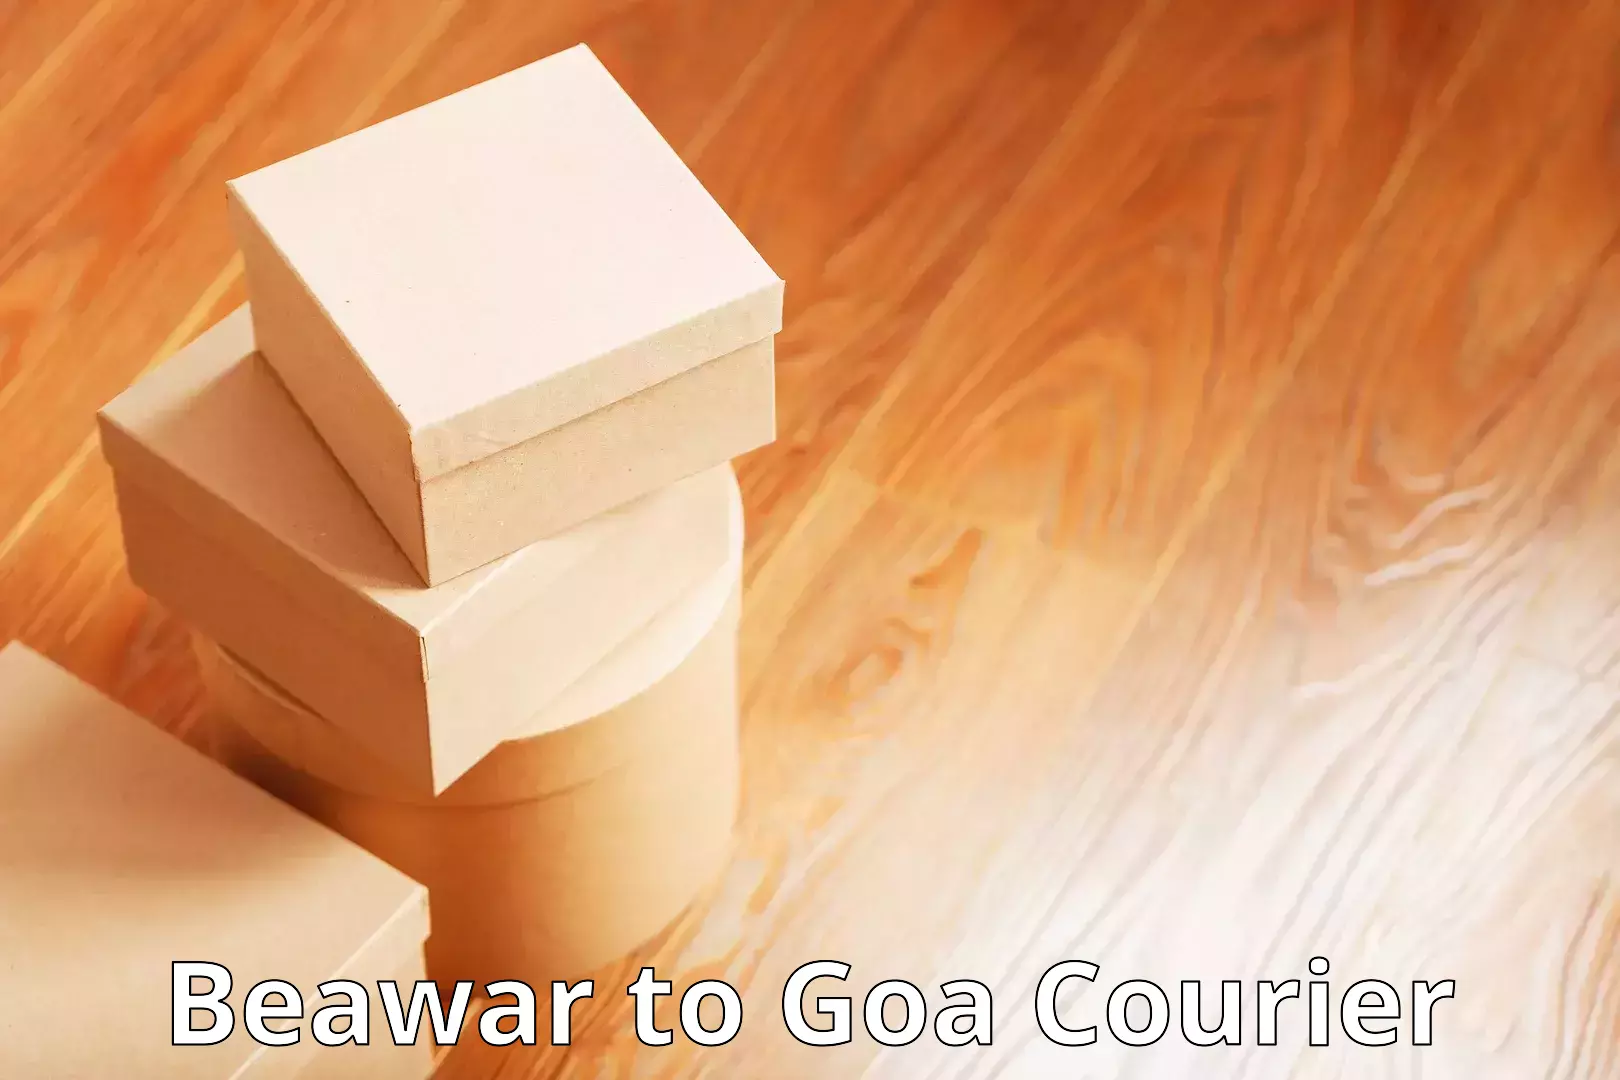 Doorstep delivery service Beawar to Goa University